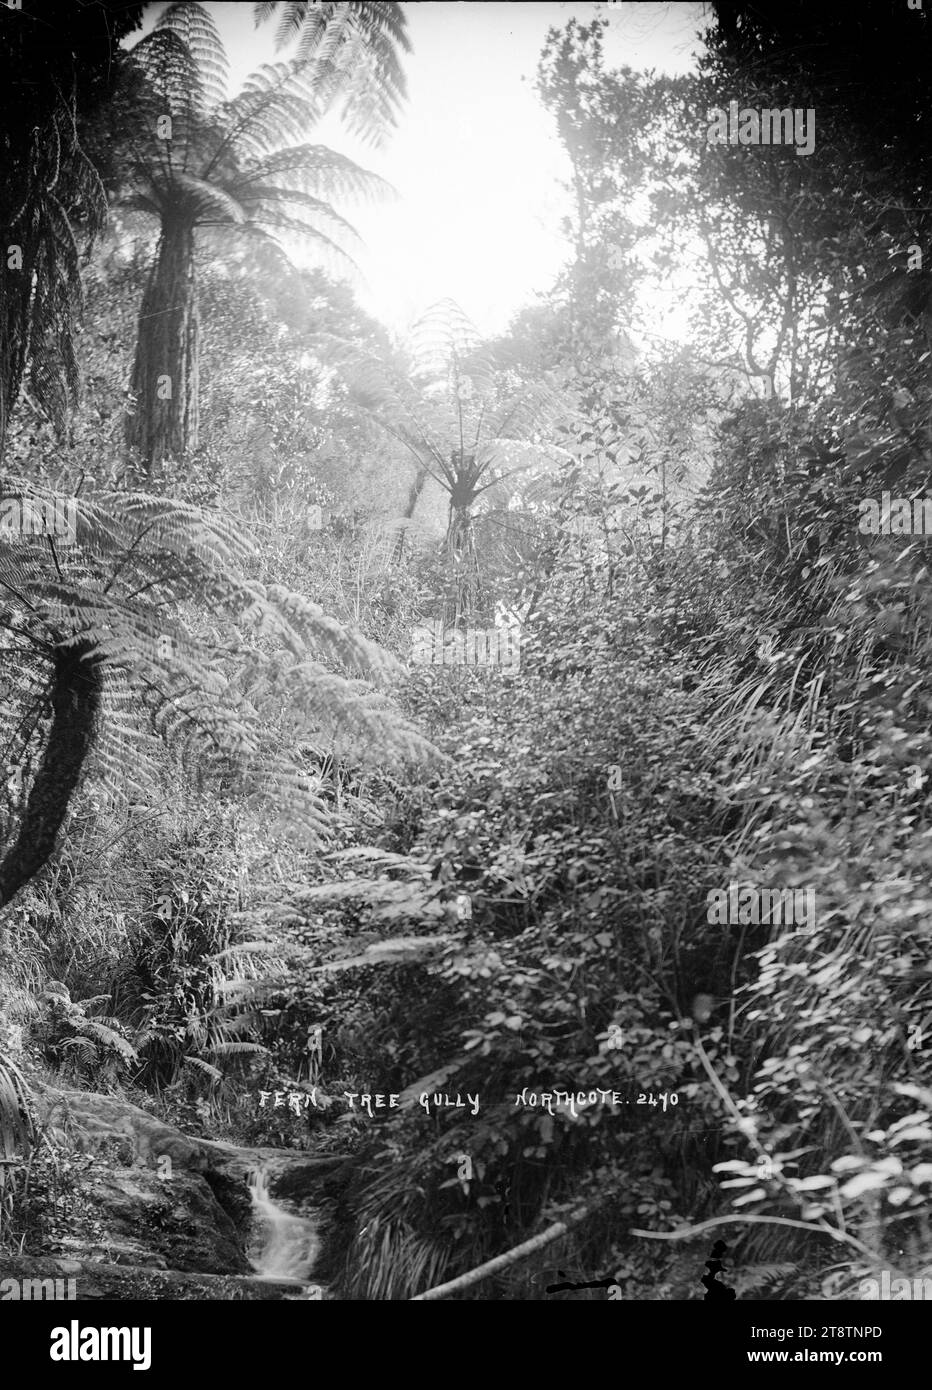 Fern Tree Gully, Northcote, Auckland, Neuseeland, Blick auf Fern Tree Gully mit Farnen und einheimischen Pflanzen, die neben einem Fluss im Kauri Glen Park wachsen. Aufgenommen ca. 1910 Stockfoto